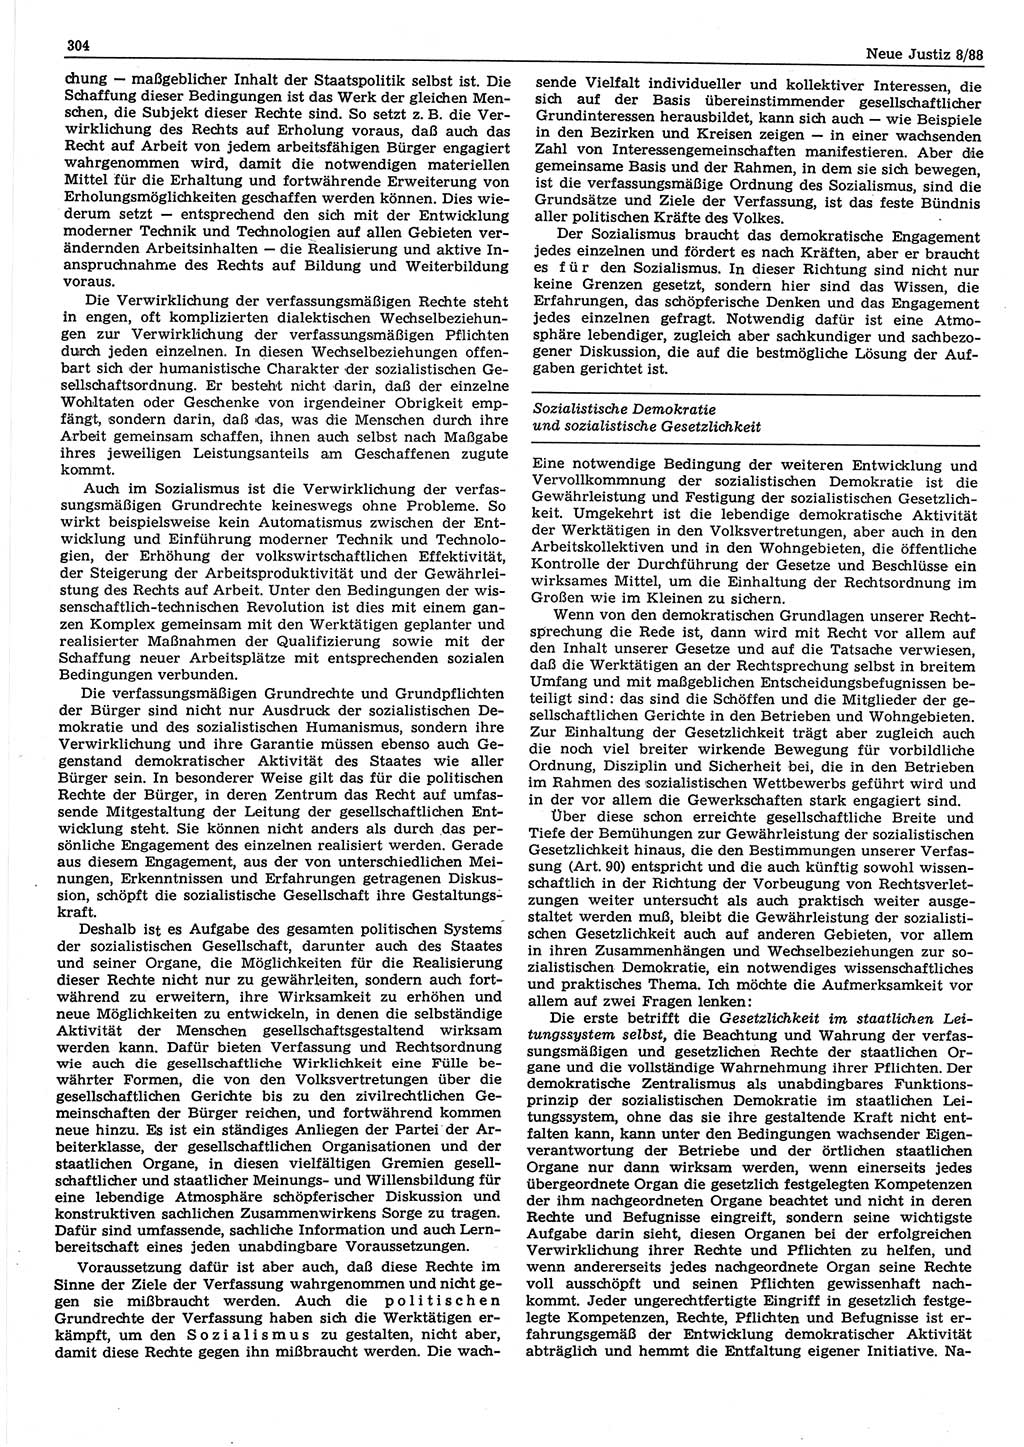 Neue Justiz (NJ), Zeitschrift für sozialistisches Recht und Gesetzlichkeit [Deutsche Demokratische Republik (DDR)], 42. Jahrgang 1988, Seite 304 (NJ DDR 1988, S. 304)